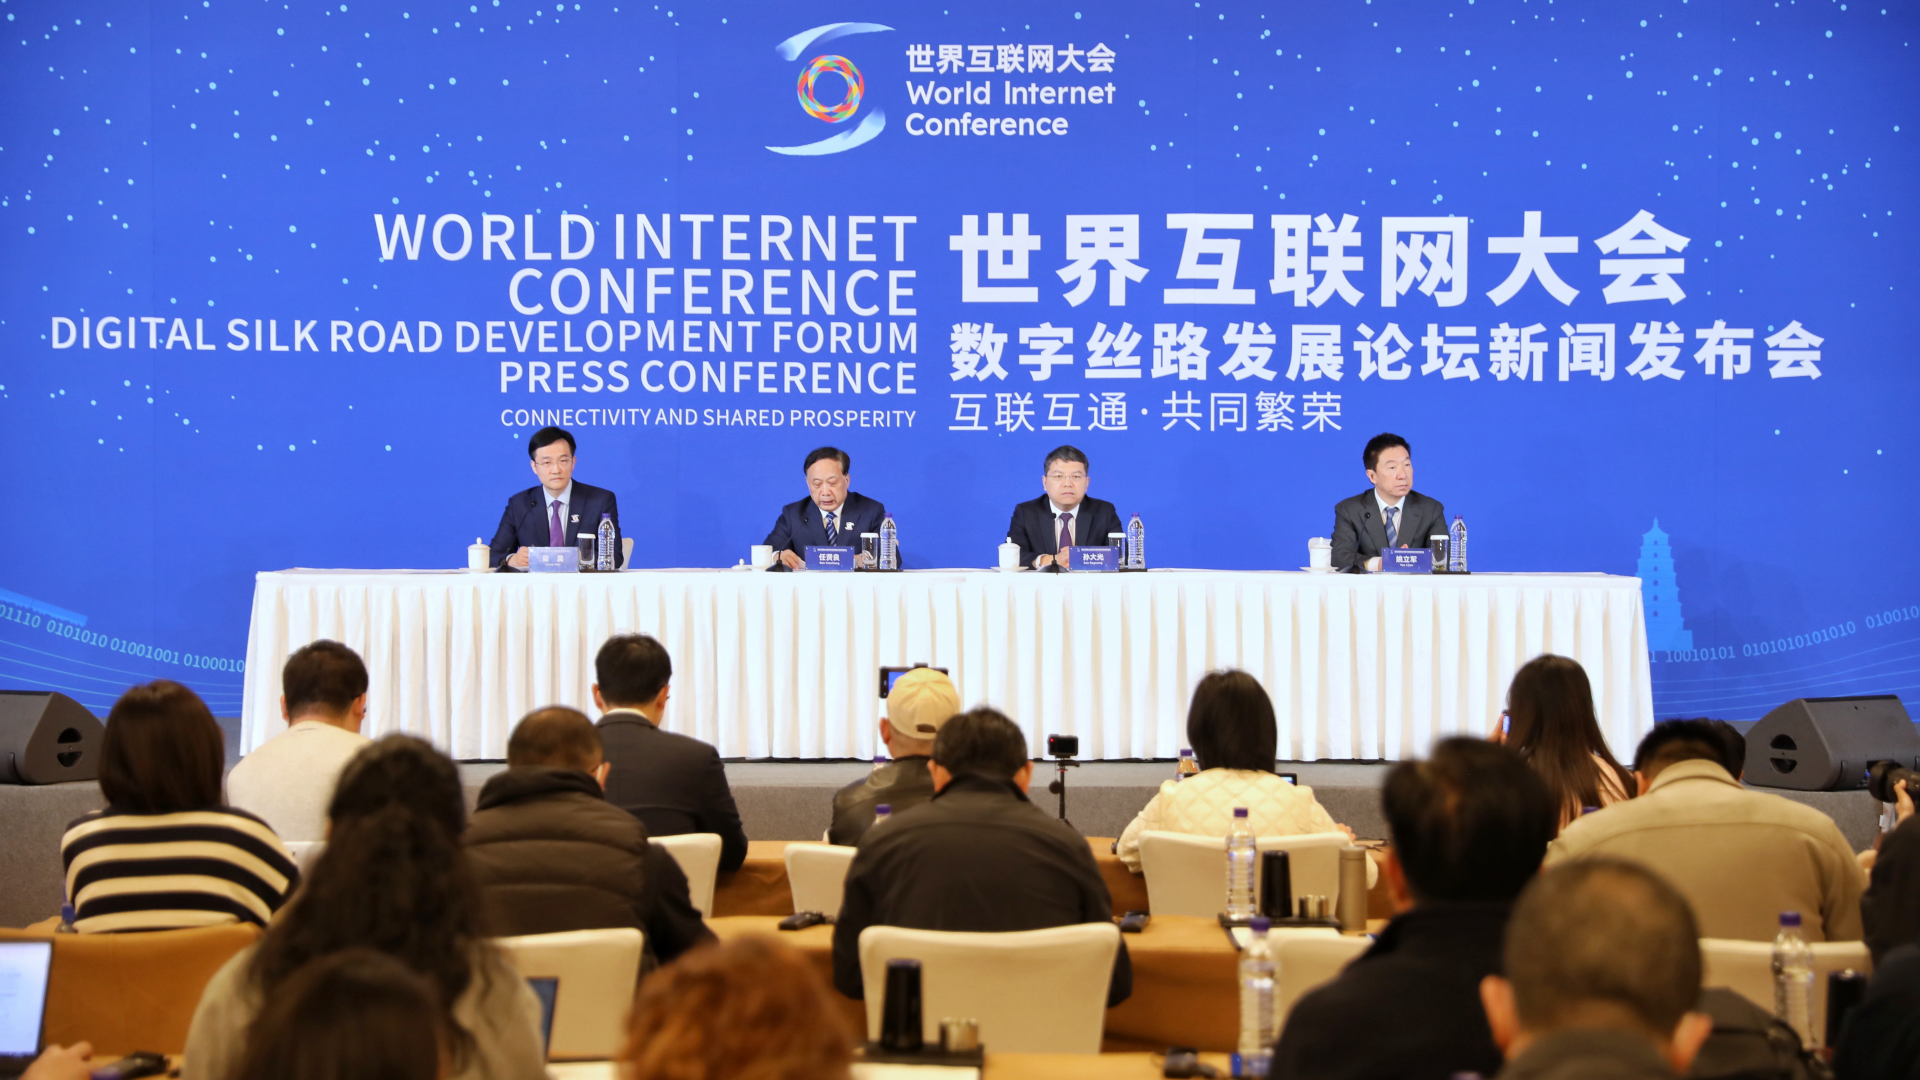 世界互联网大会数字丝路发展论坛将启动数字学院项目